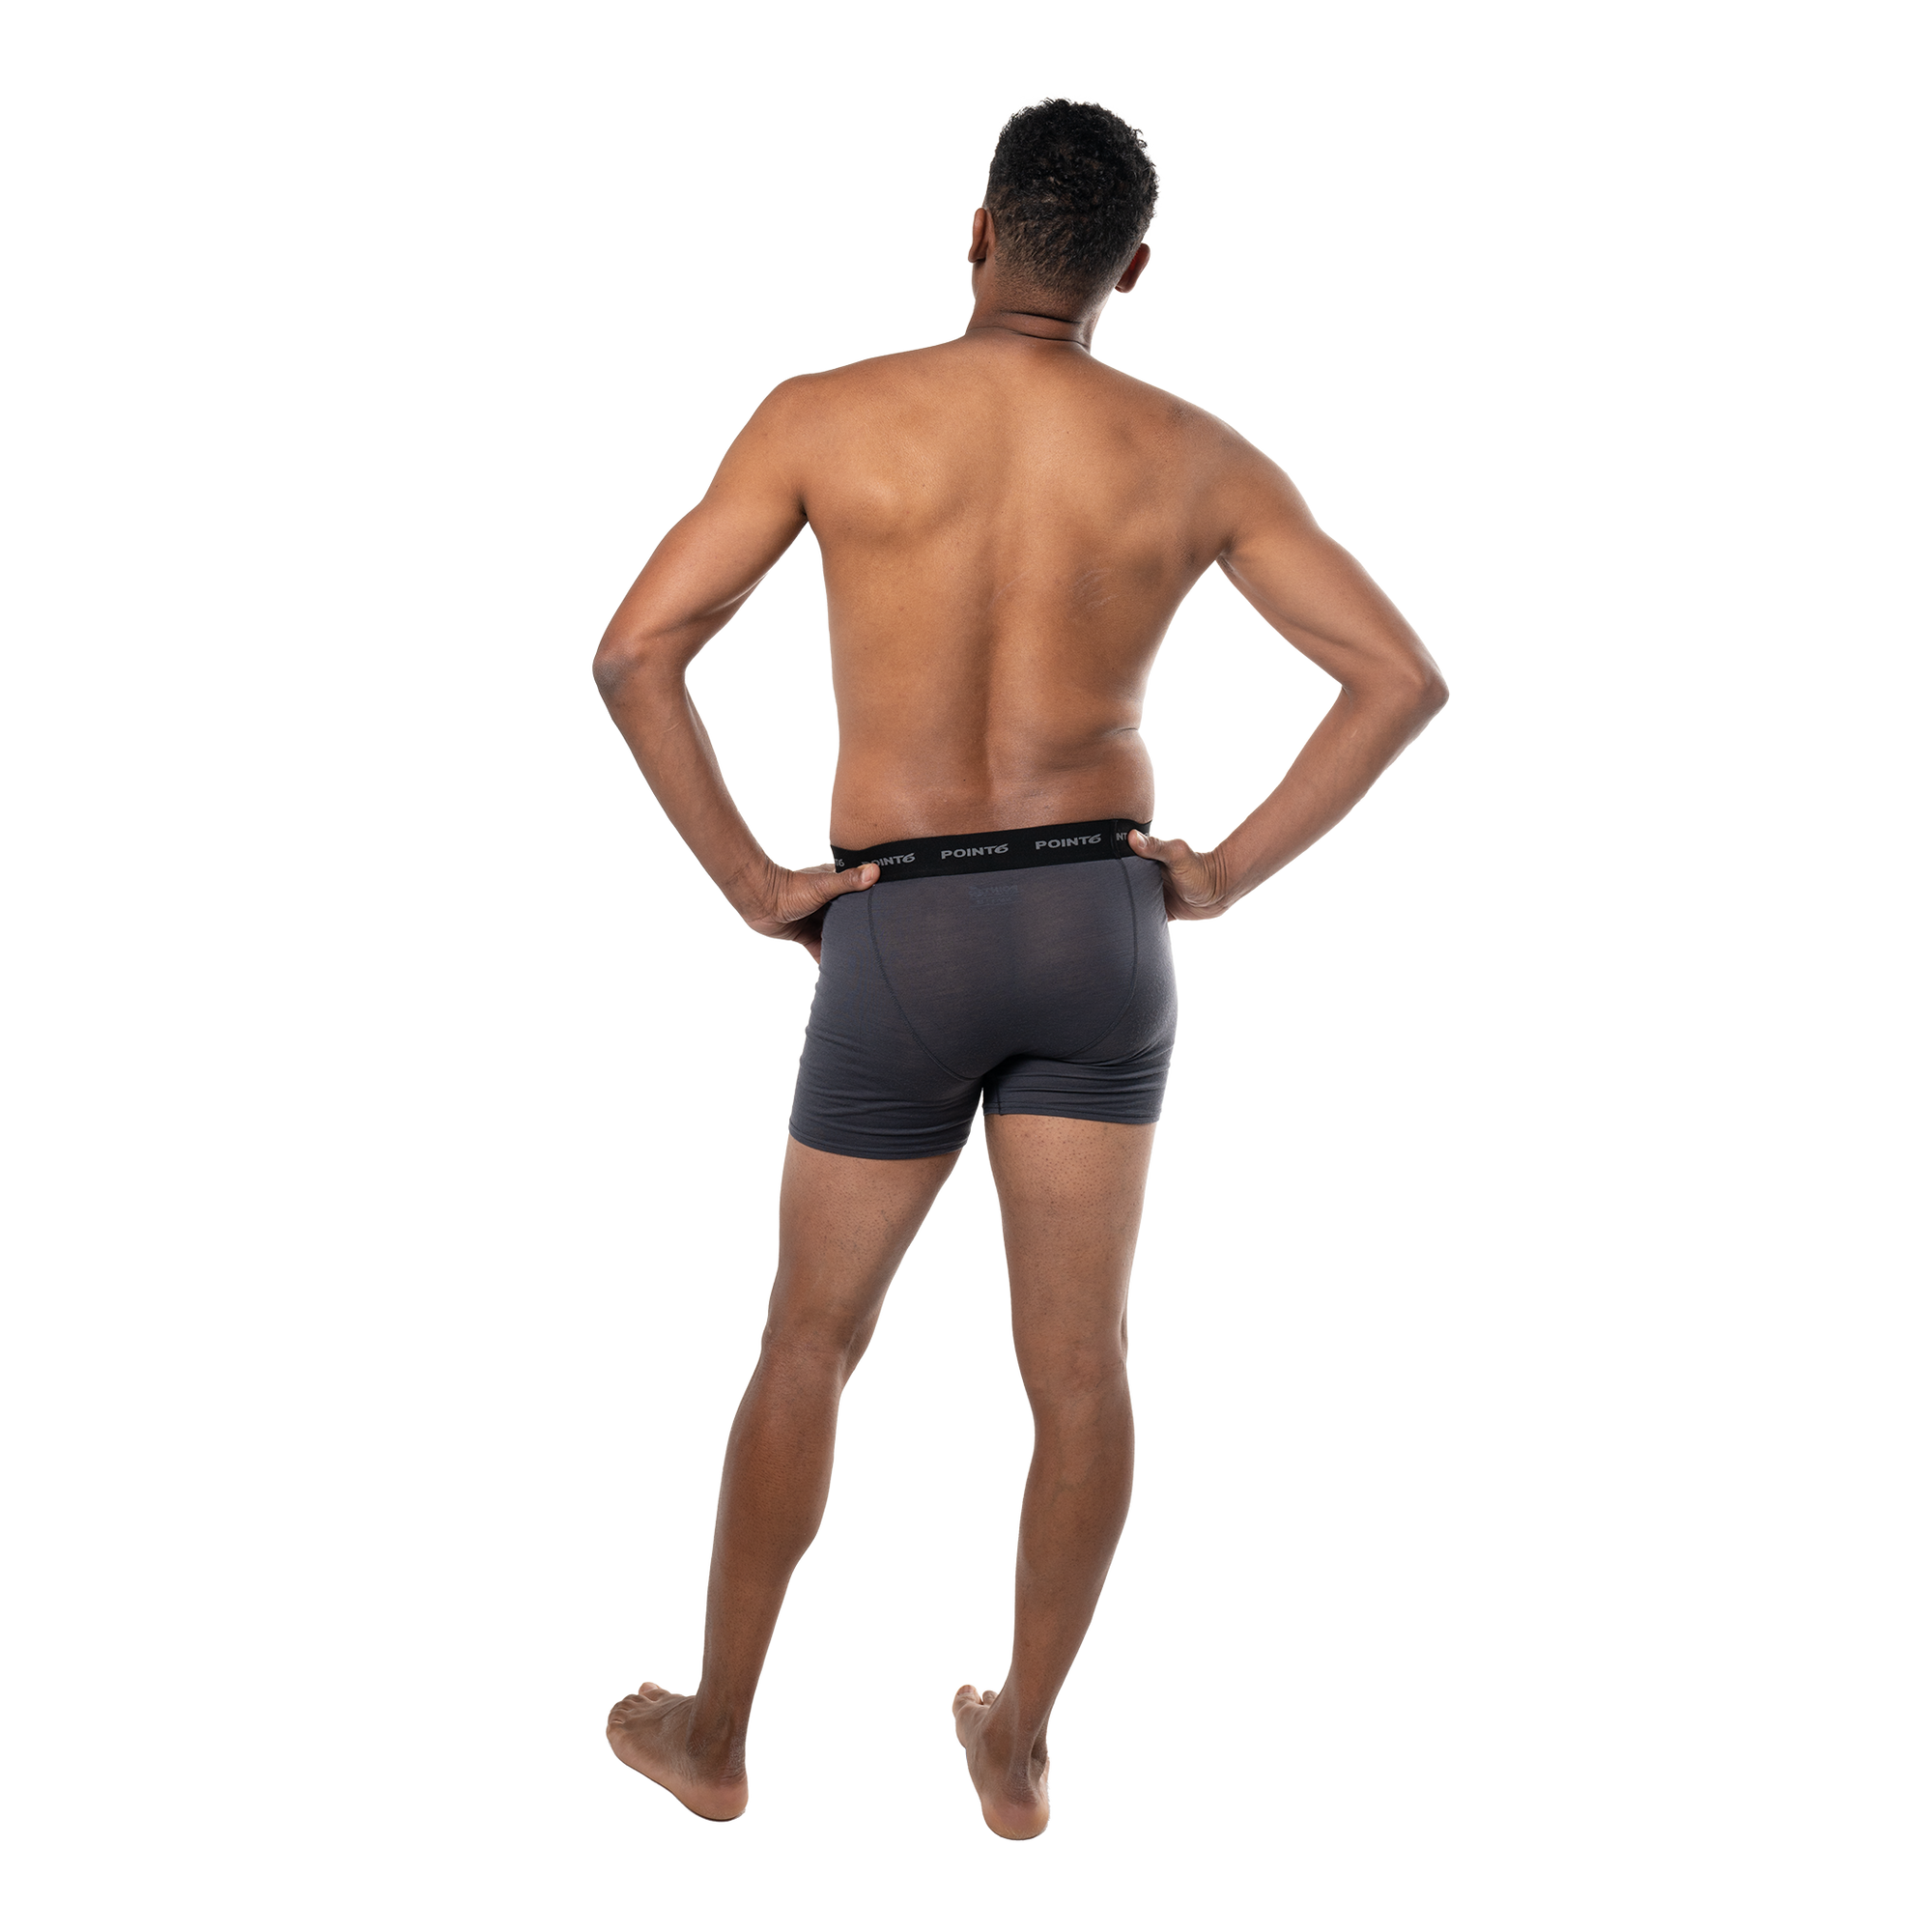 Underwear Suggestion: MaleBasics - 3 Pack Marine Boxer Briefs